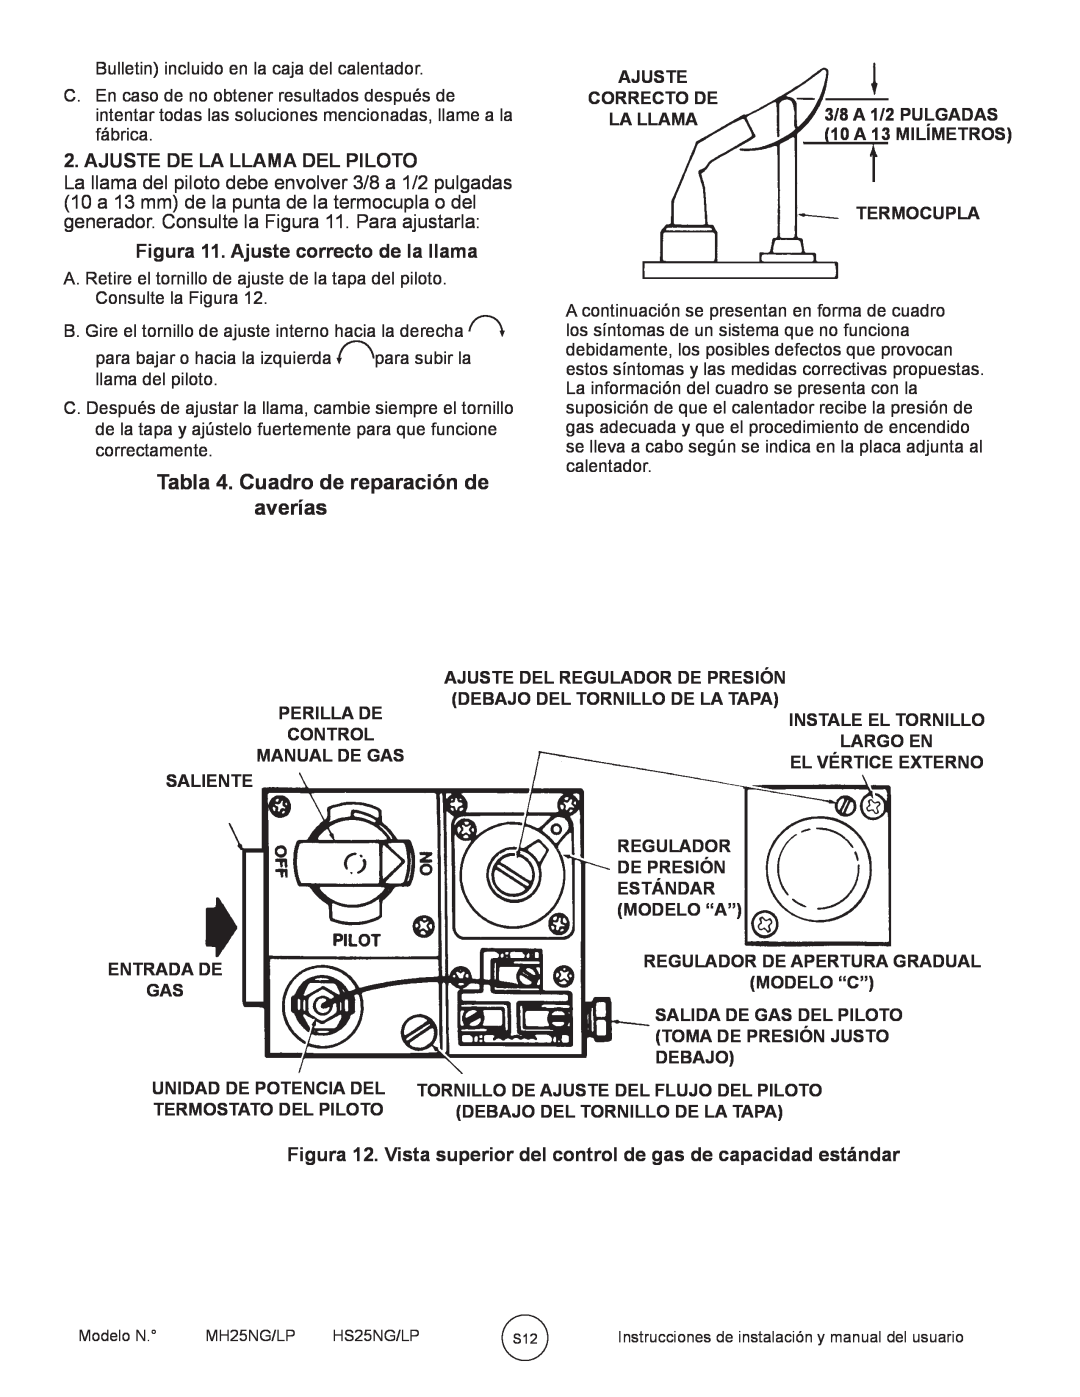 Mr. Heater MH25NG/LP, HS25NG/LP owner manual Tabla 4. Cuadro de reparación de averías, Ajuste De La Llama Del Piloto 